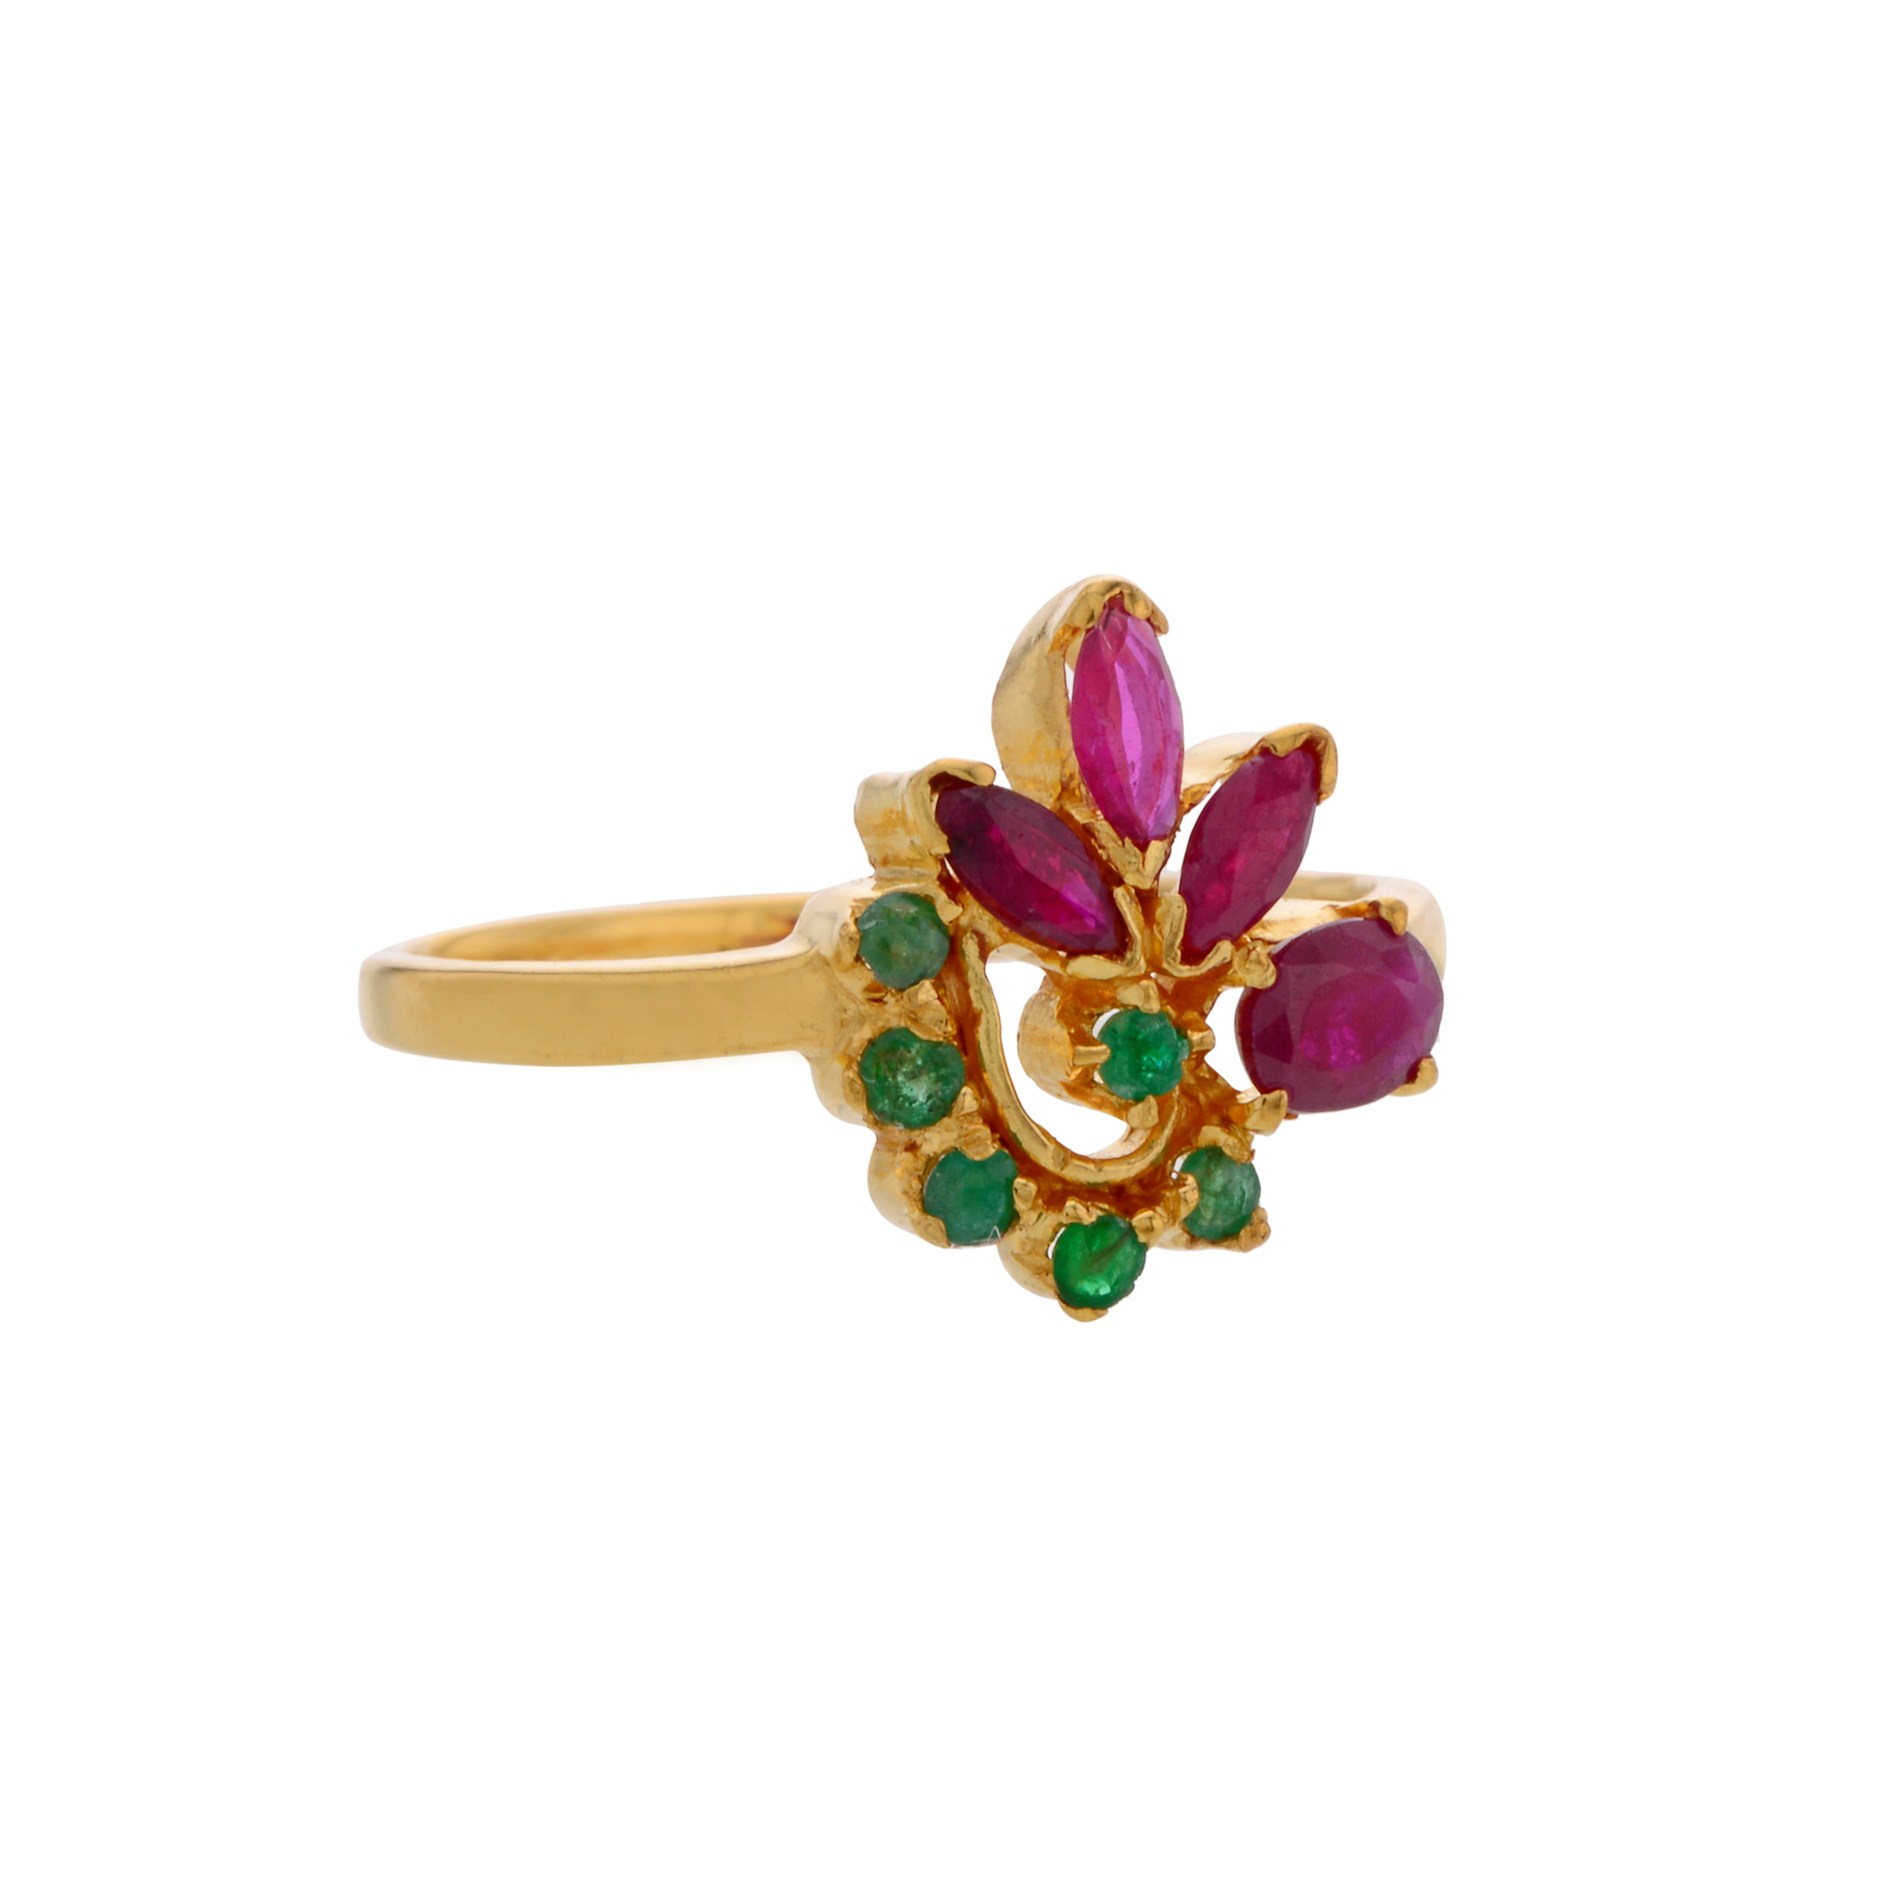 Buy Elegant Ruby Stone Adjustable Finger Ring Design for Female